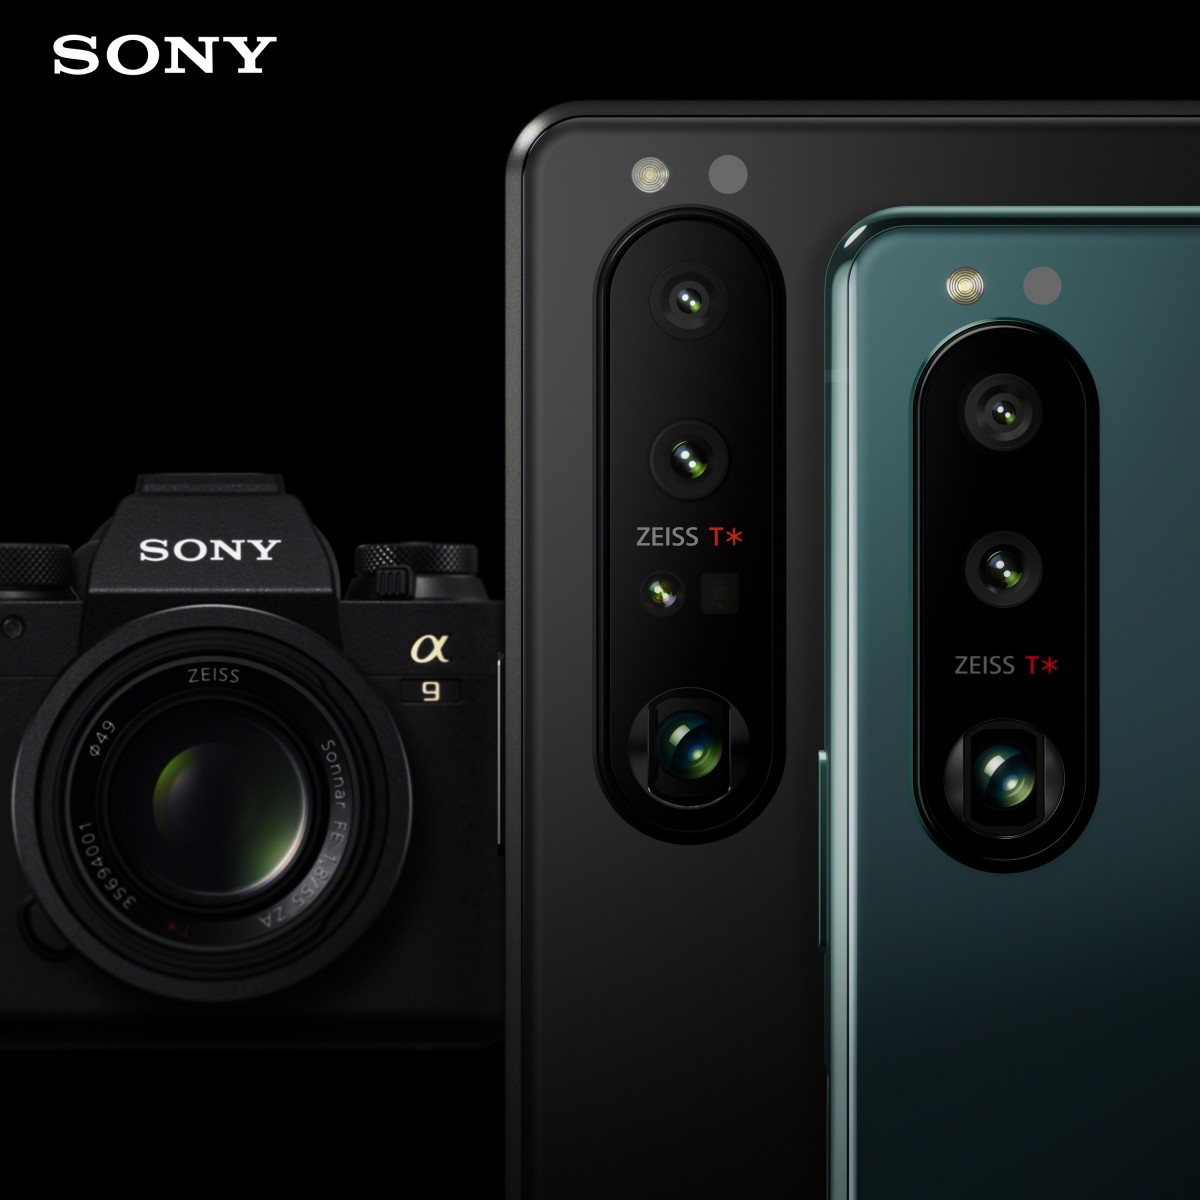 Sony Xperia 1 III và Xperia 5 III ra mắt: Màn hình OLED 4K, camera thay đổi được tiêu cự, Snapdragon 888, giá 29.9 triệu đồng - Ảnh 2.